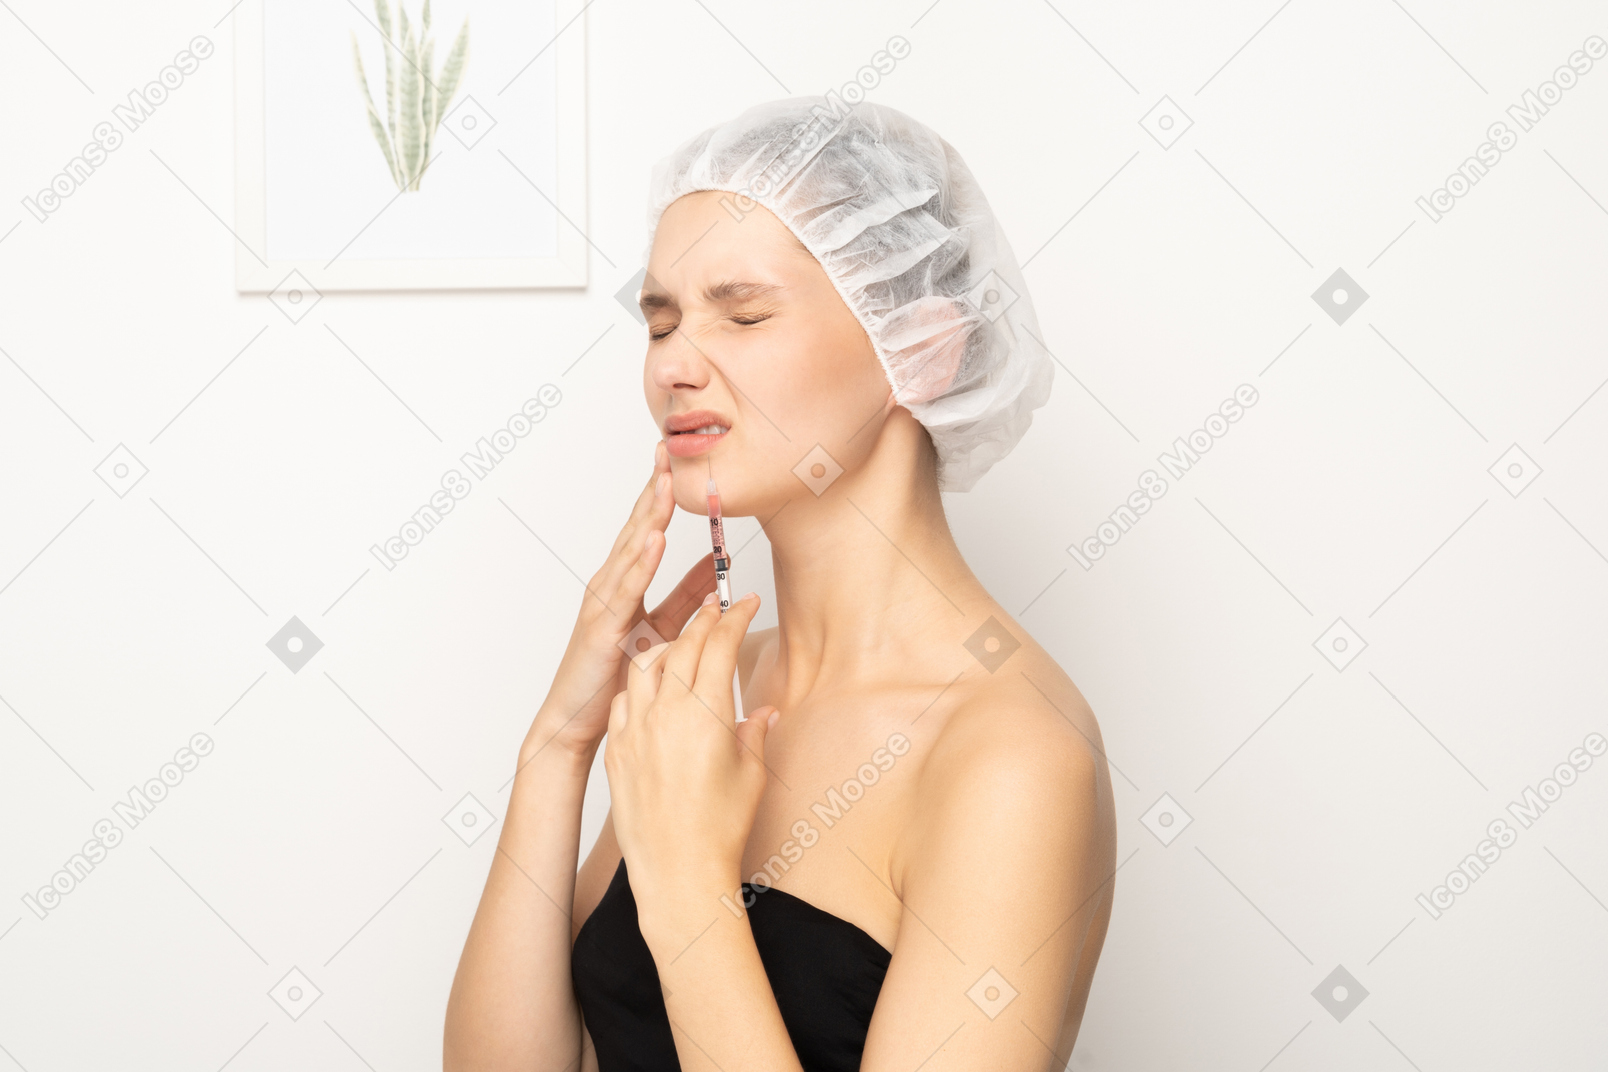 Женщина в боли держит шприц